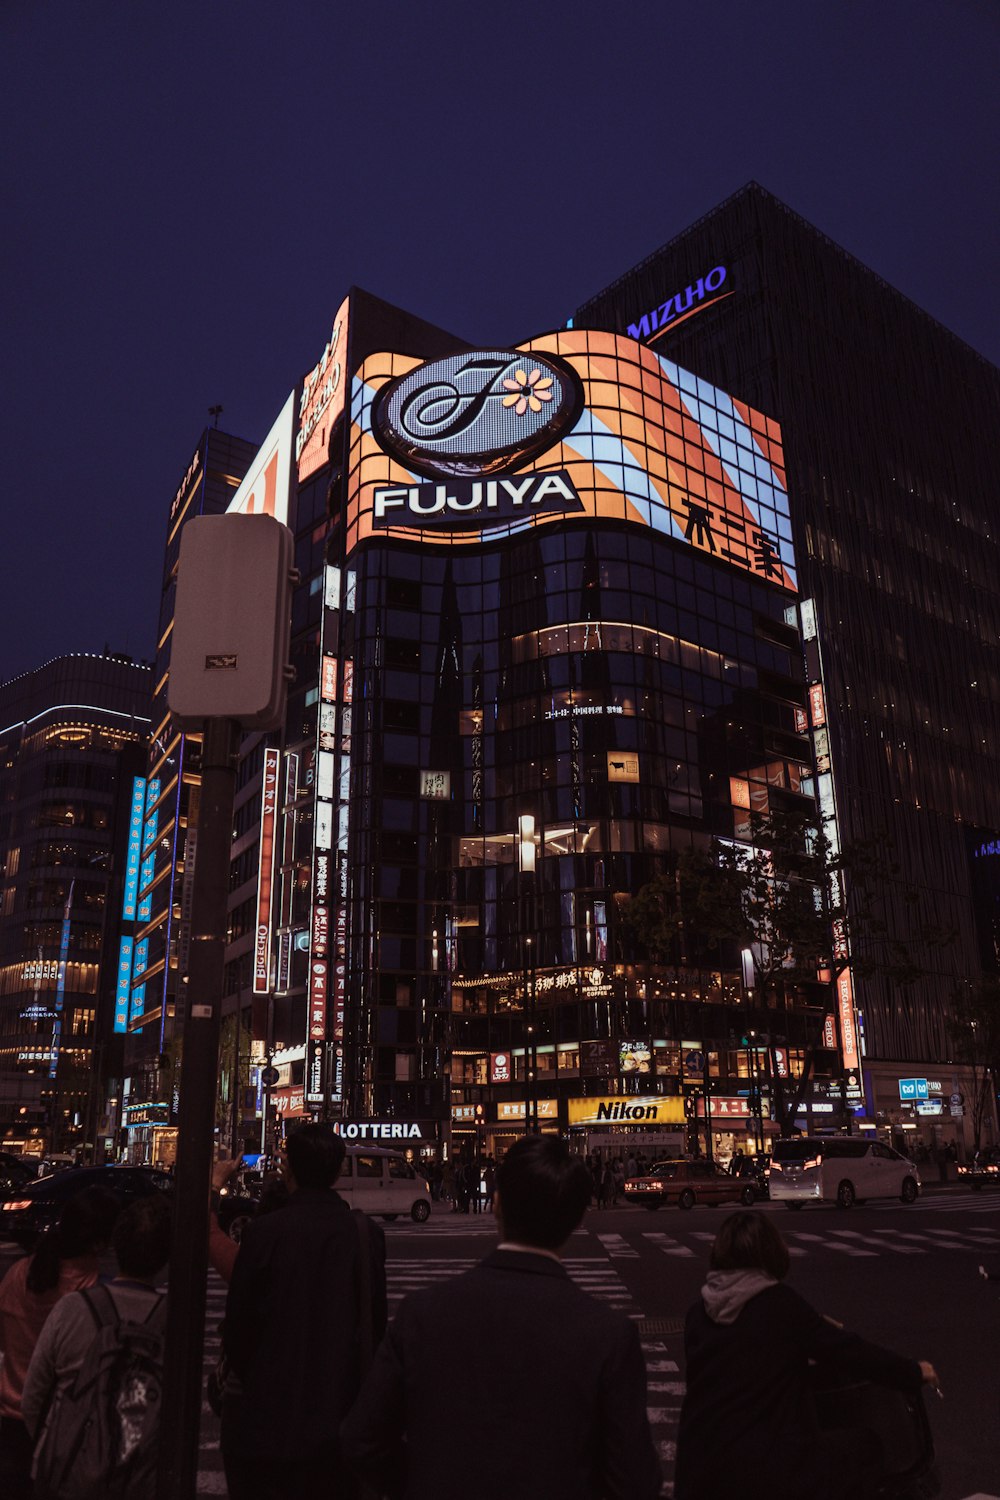 Fujiva building at nighttime